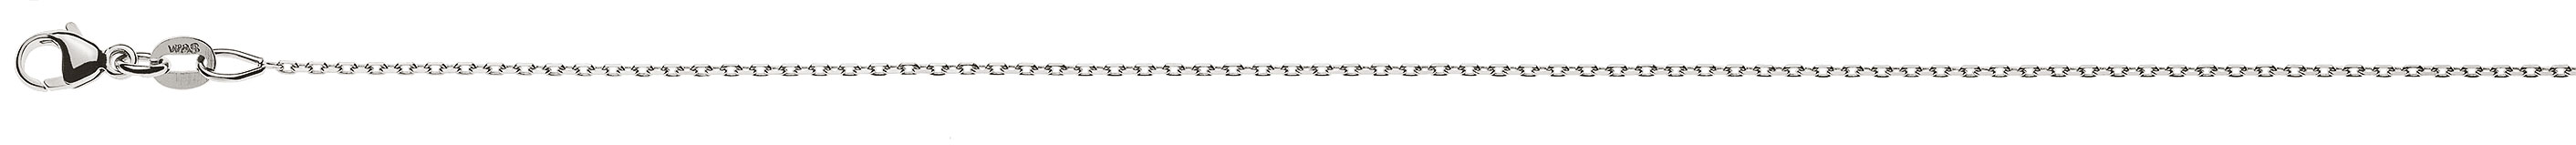 AURONOS Prestige Halskette Weissgold 18K Anker 4-fach geschliffen 55cm 0.9mm